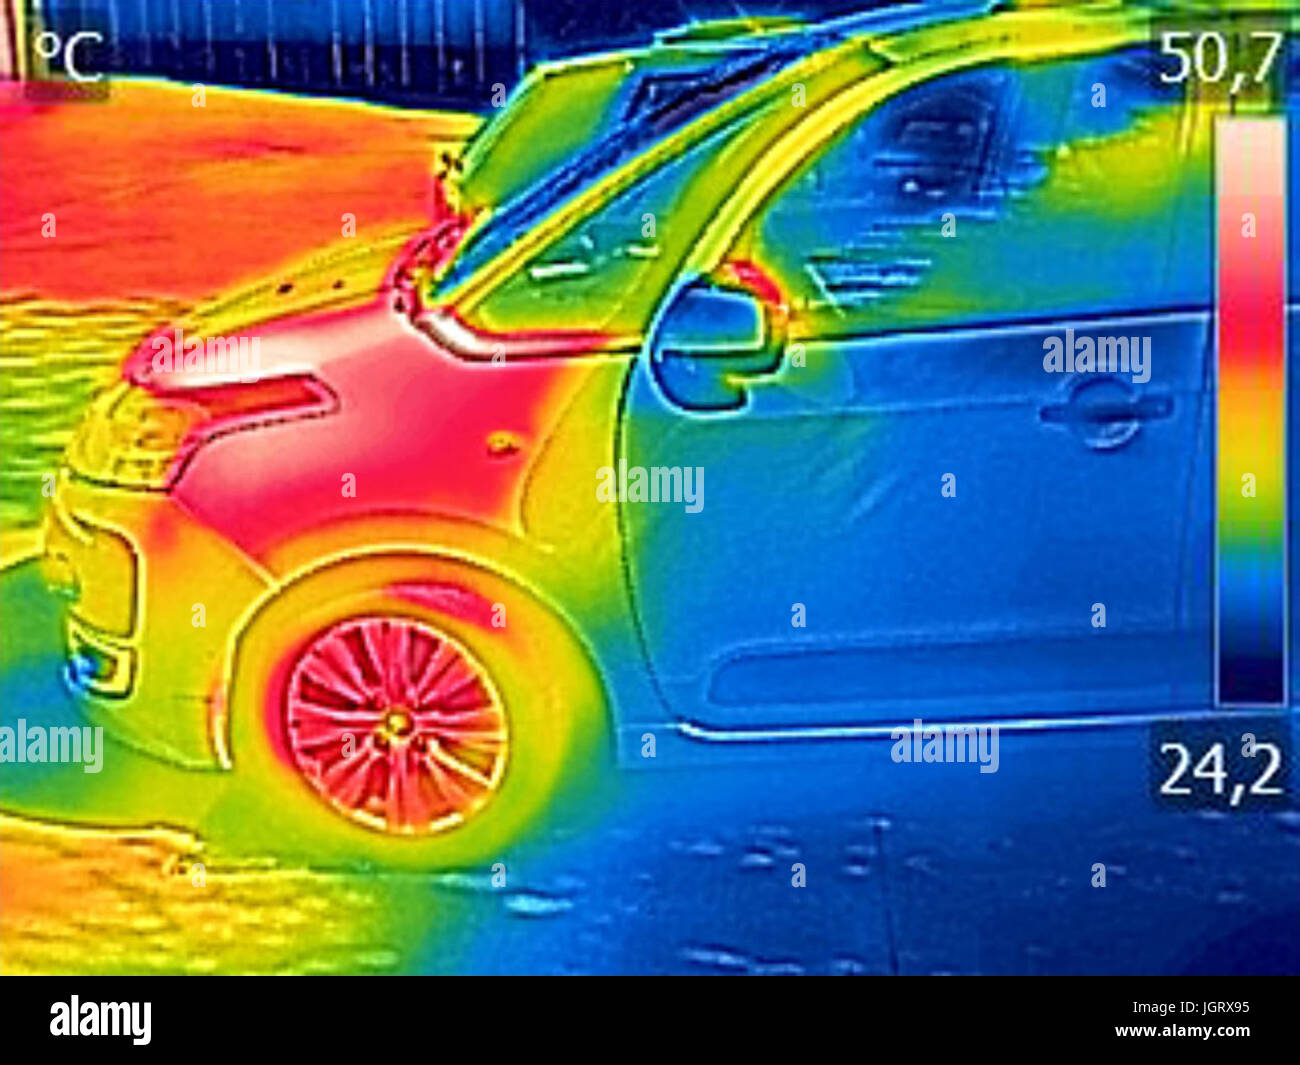 Infrarot-Thermografie-Bild zeigt, Auto Motor nach der Fahrt Stockfotografie  - Alamy